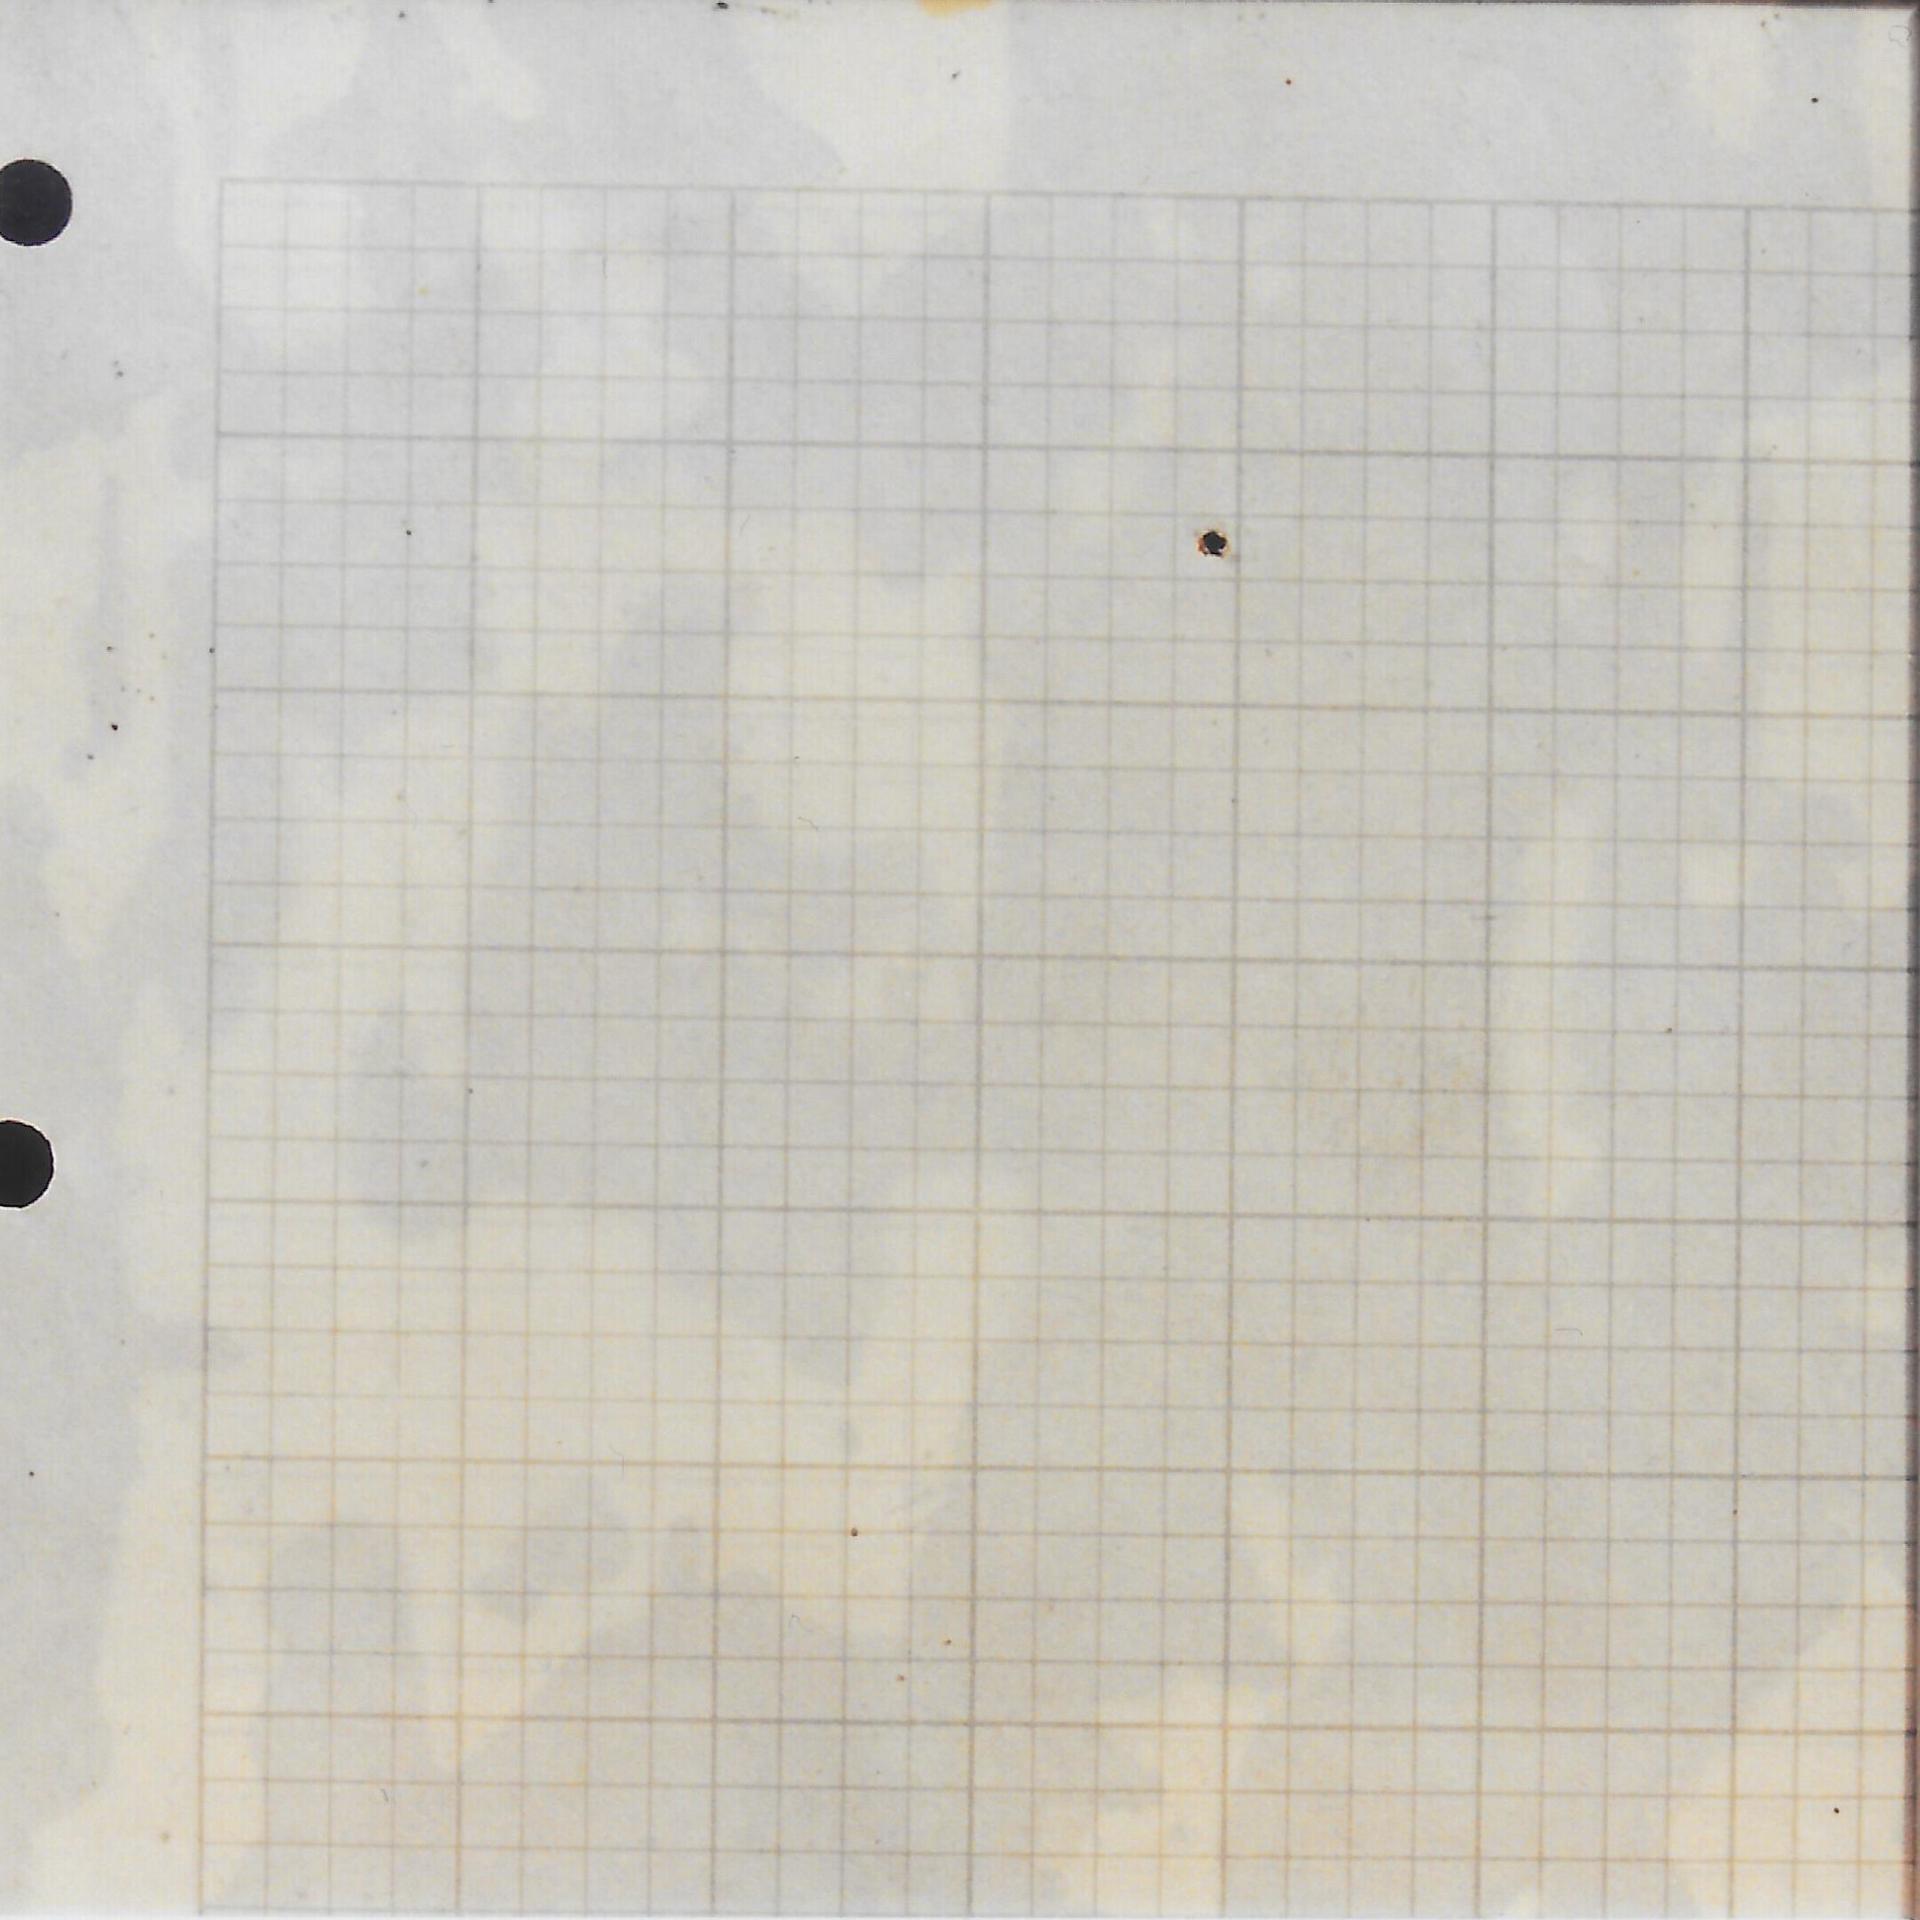 Papel fotográfico y serigrafía sobre metacrilato, 10 × 10 cm